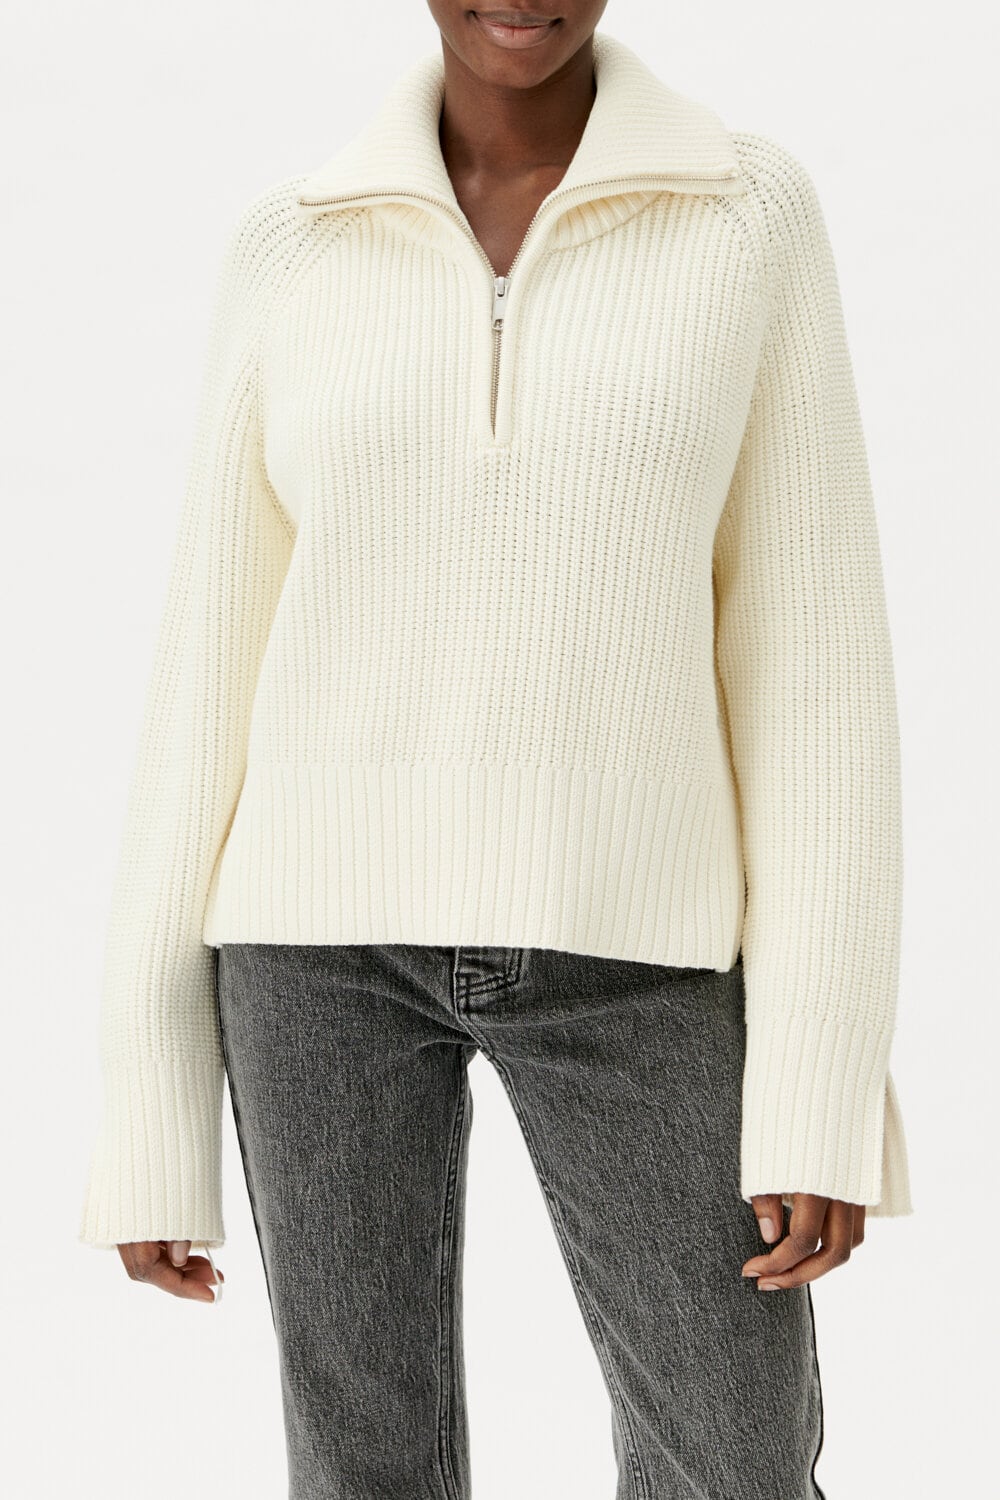 Cheri Sweater